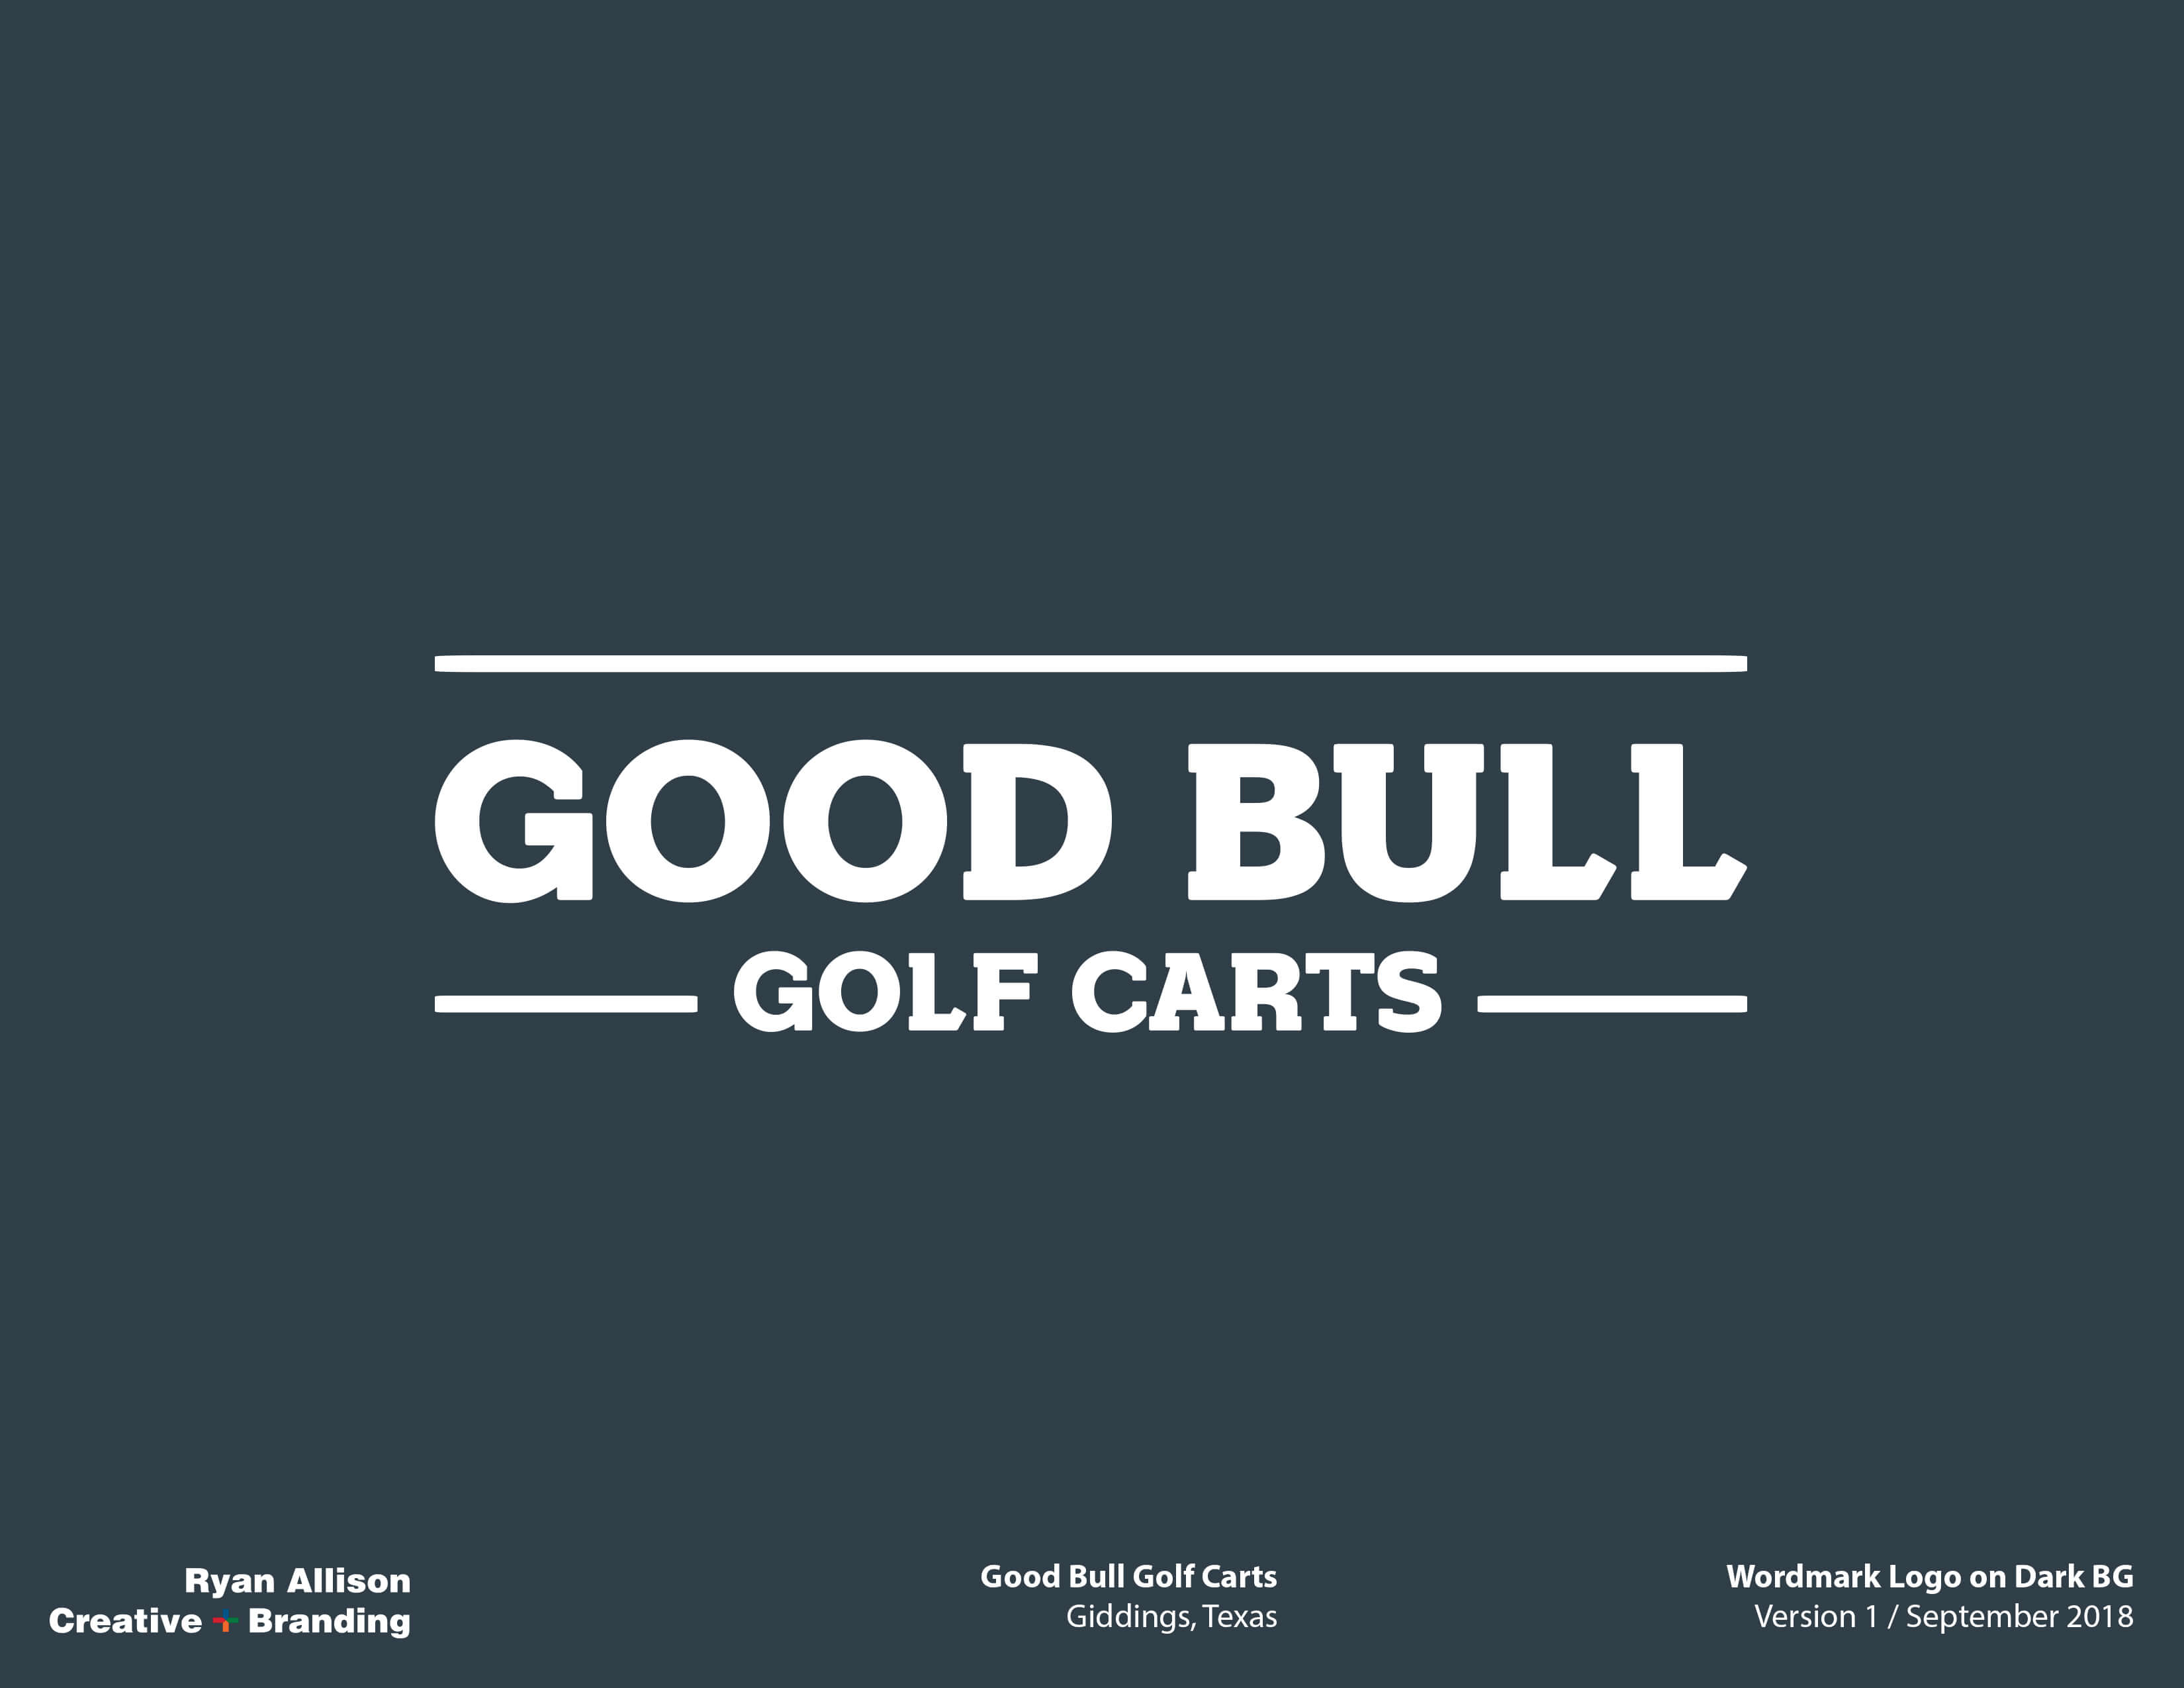 Good Bull Golf Carts Wordmark Logo on Dark BG - Logo - Ryan Allison Creative + Branding